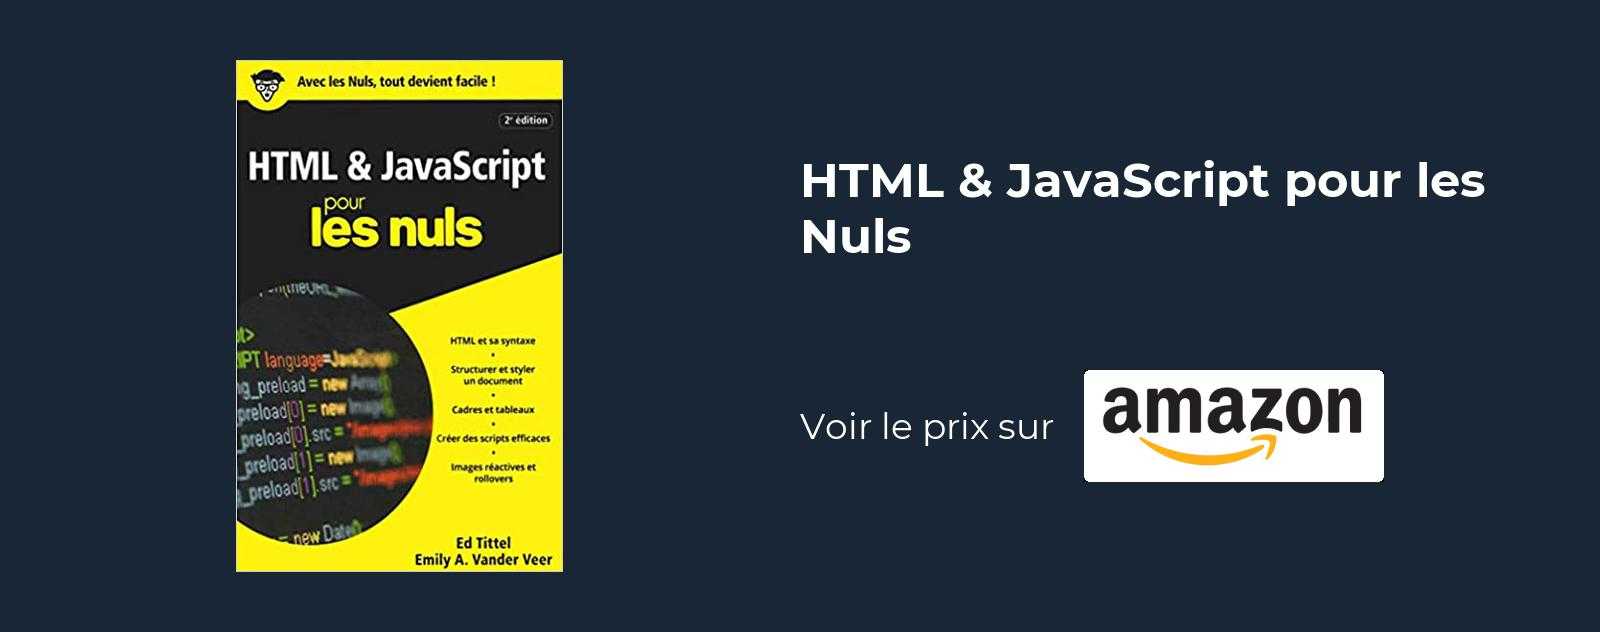 HTML & JavaScript pour les Nuls